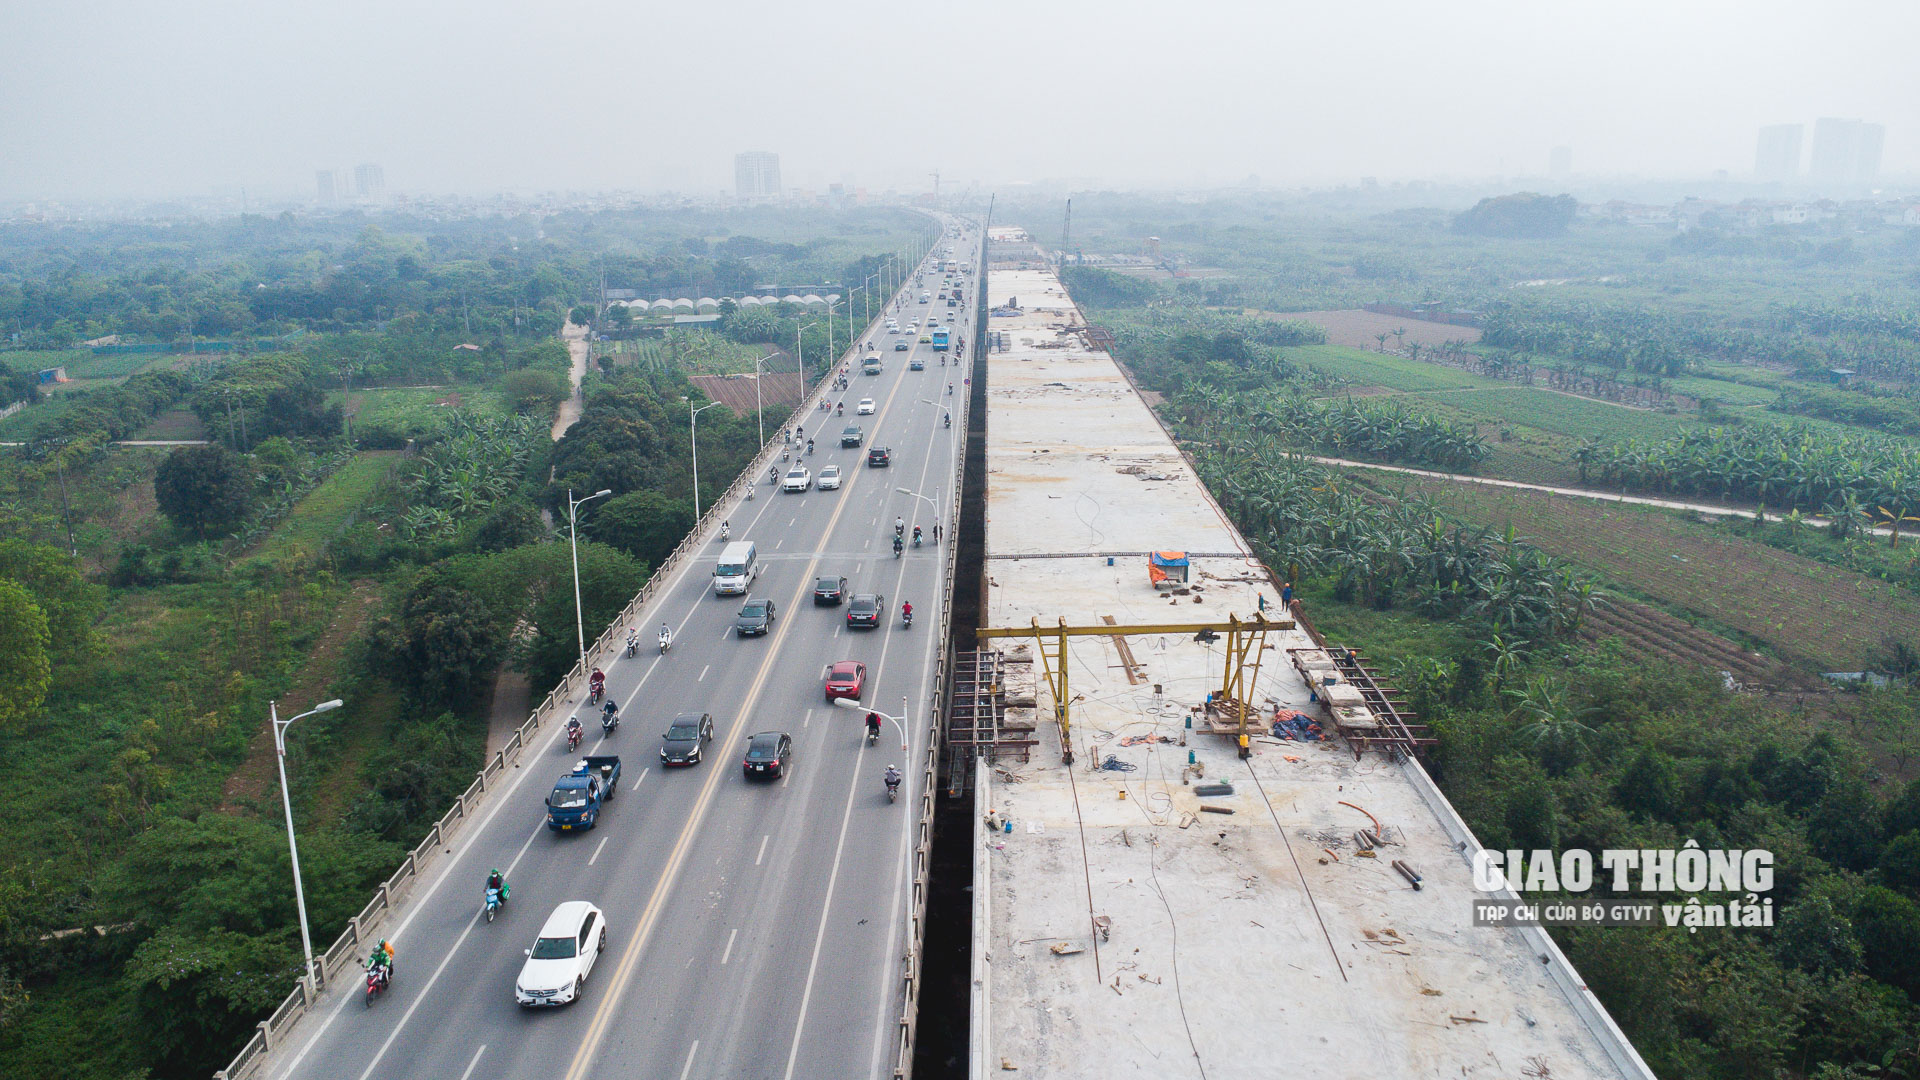 Dự án xây dựng cầu Vĩnh Tuy 2 có tổng mức đầu tư hơn 2.500 tỷ đồng, do UBND TP.Hà Nội làm chủ đầu tư. Cầu được xây dựng ở phía hạ lưu, nằm song song cầu Vĩnh Tuy hiện hữu, mép cầu cách mép cầu cũ 2m, tim cầu Vĩnh Tuy 2 cách tim cầu Vĩnh Tuy 1 về phía hạ lưu sông Hồng 21,25m.